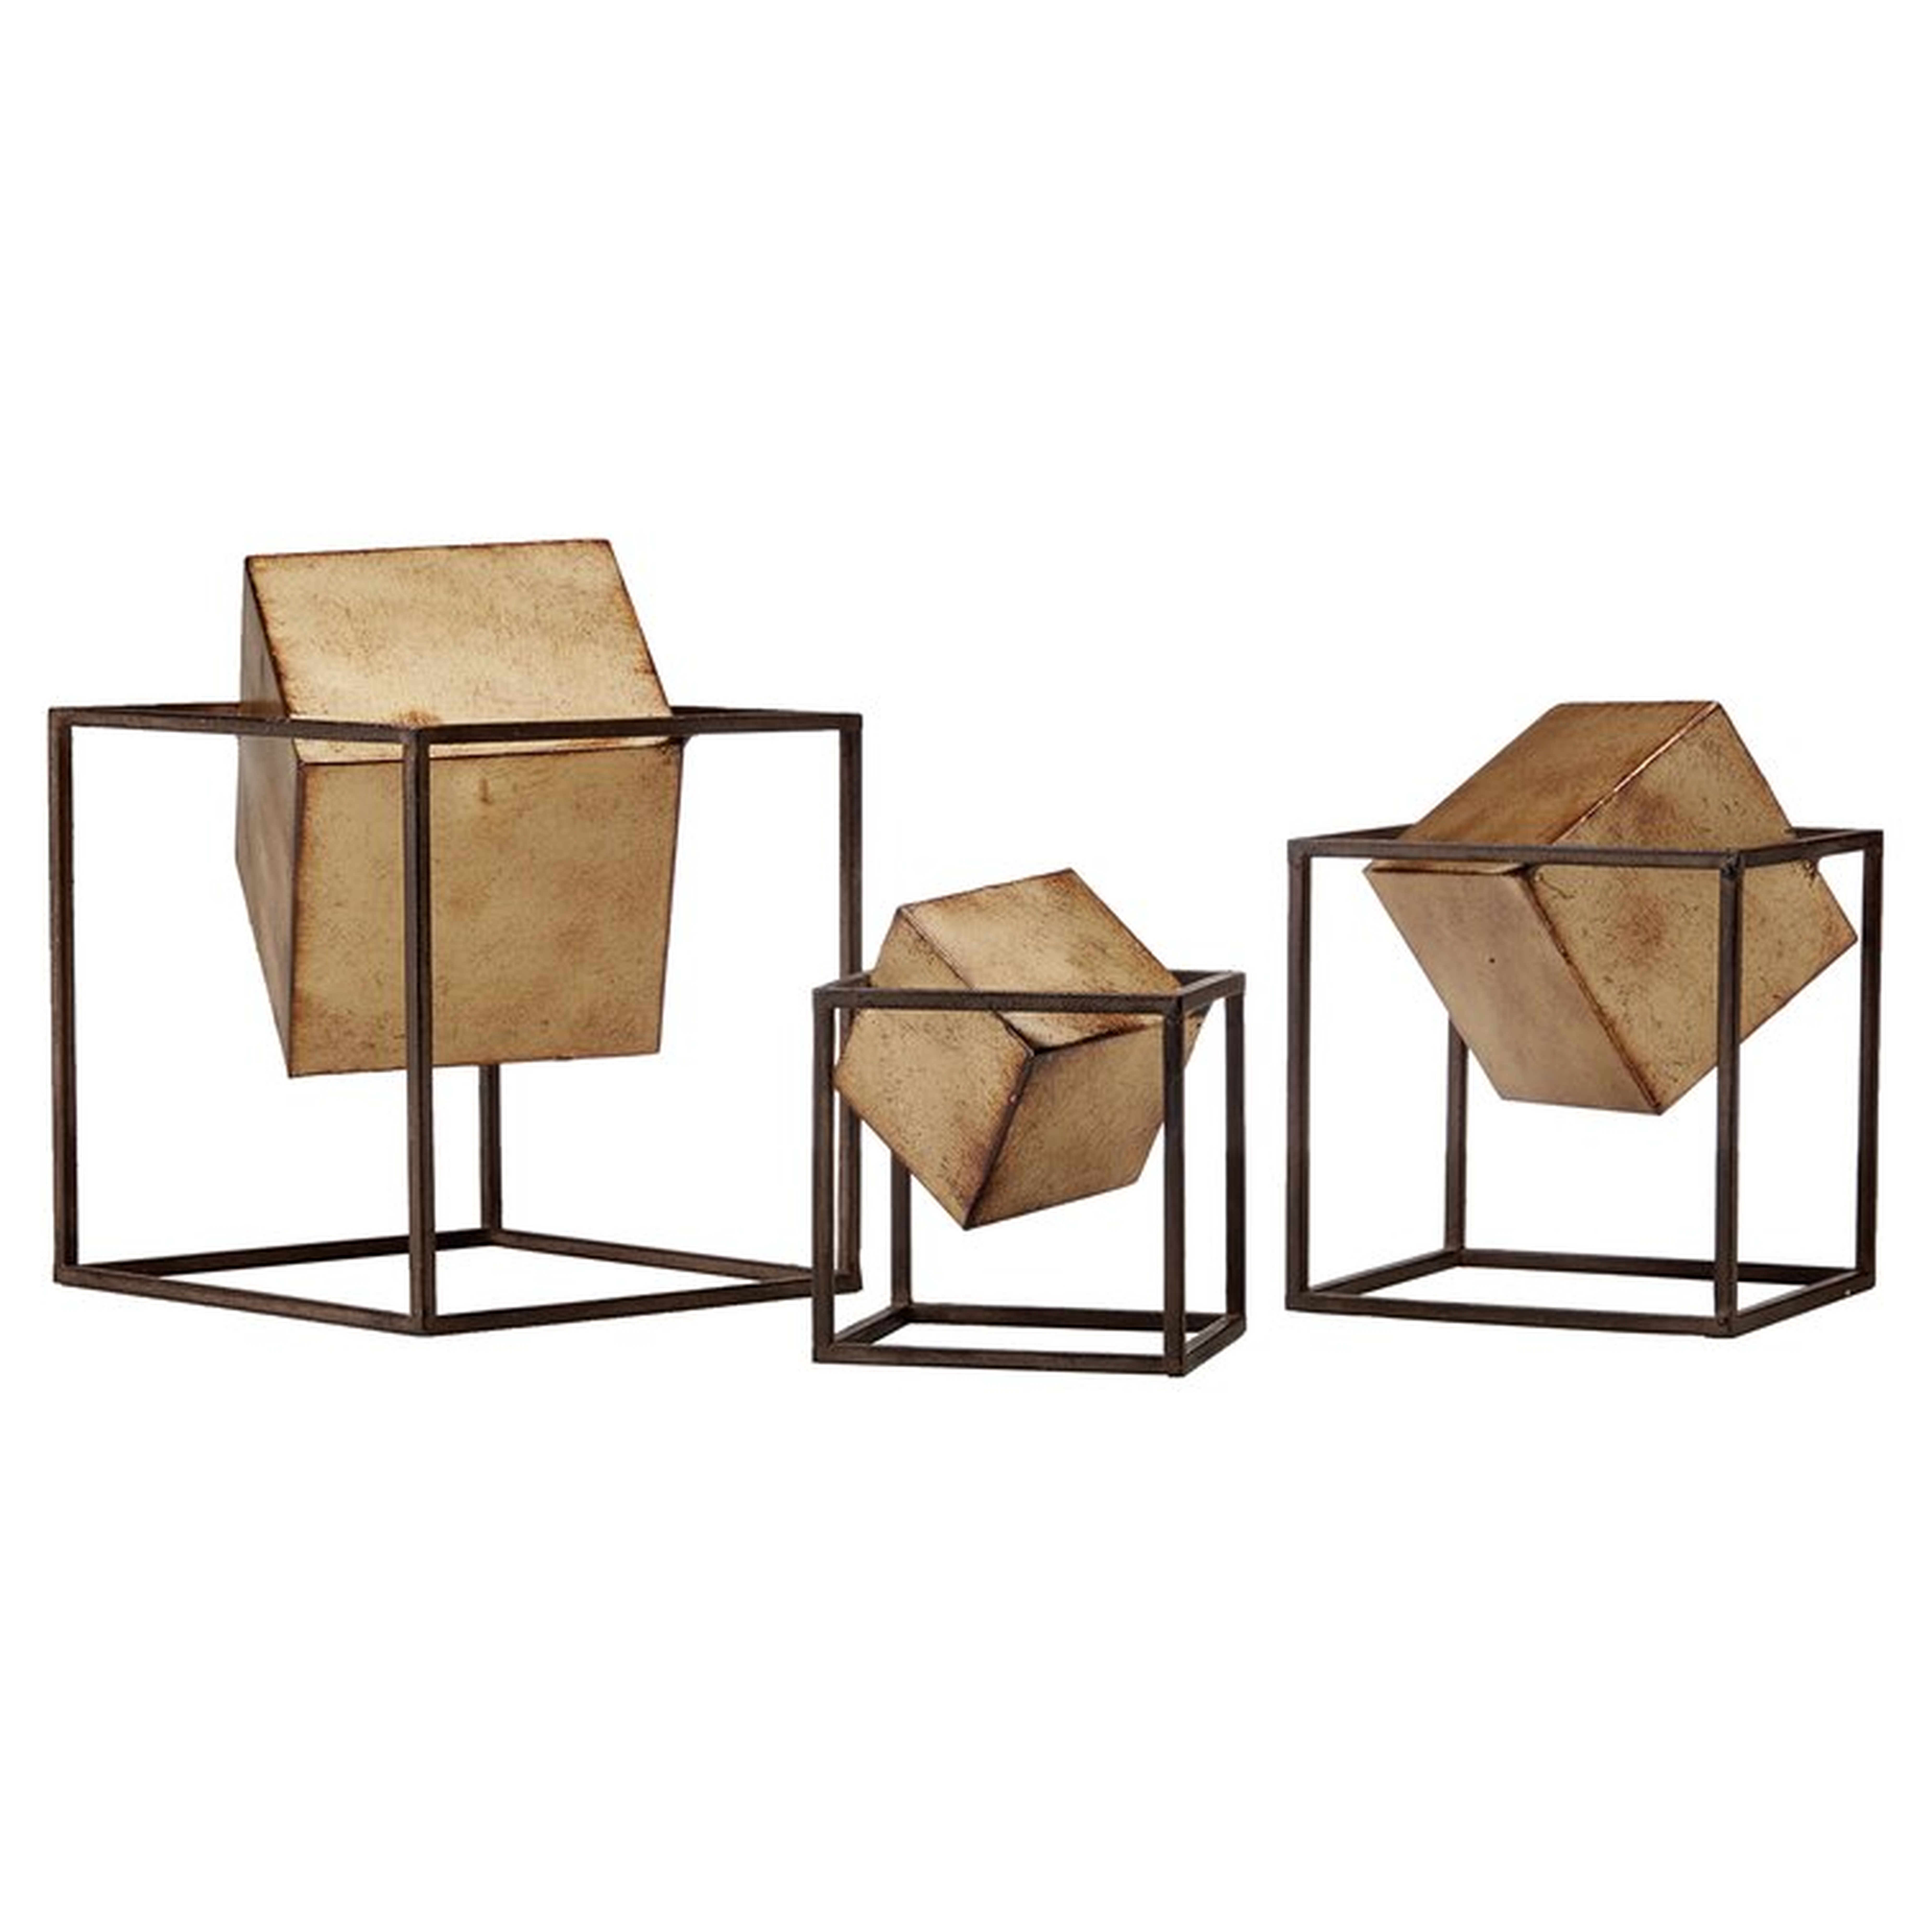 3 Piece Cube Sculpture Set - Wayfair